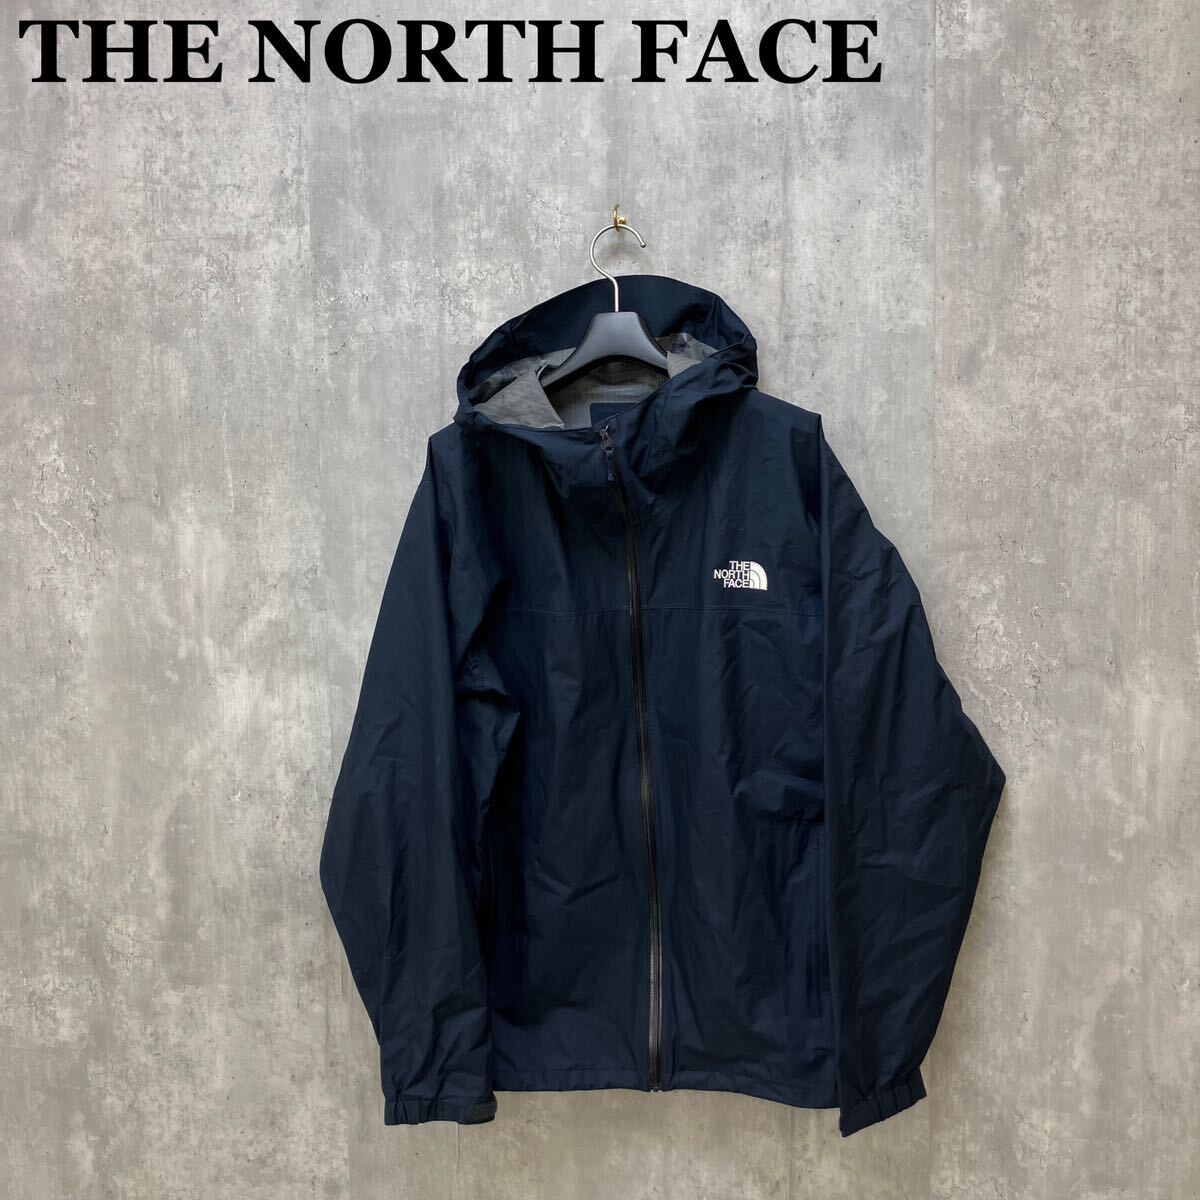 THE NORTH FACE ベンチャージャケット NP12006 L VENTURE JACKET マウンテンパーカー ノースフェイス の画像1